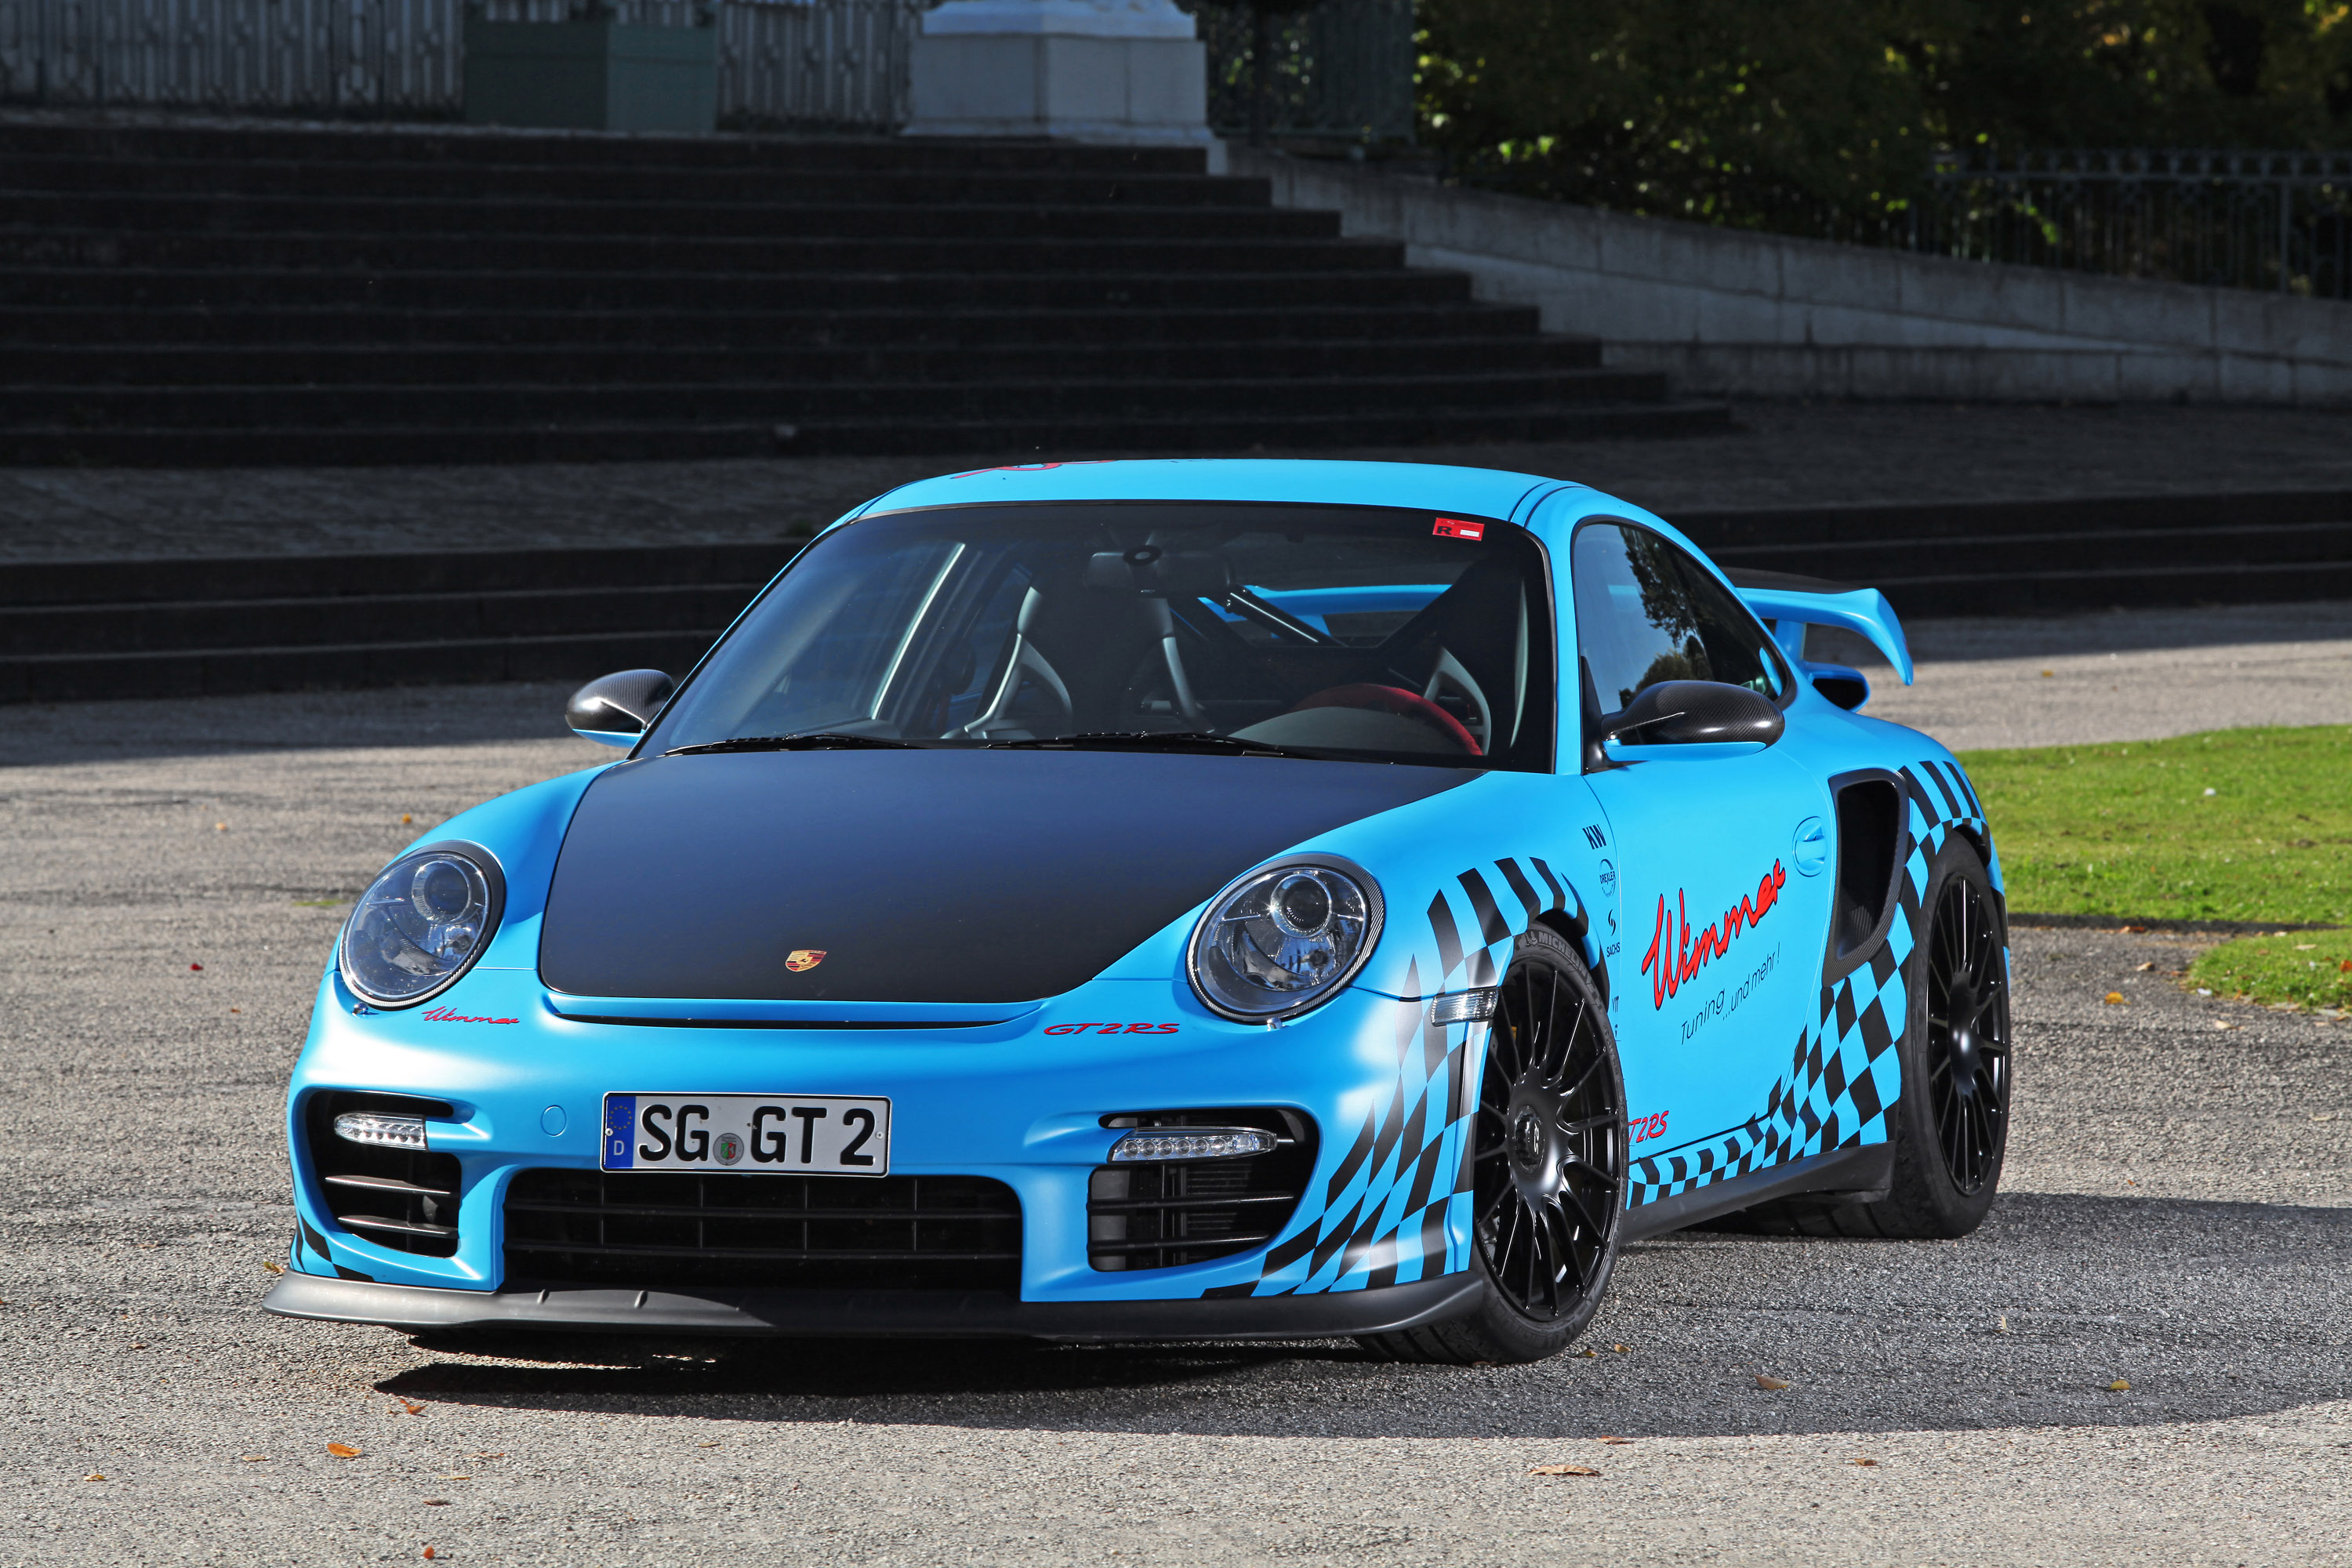 Télécharger des fonds d'écran Porsche 911 Gt2 HD